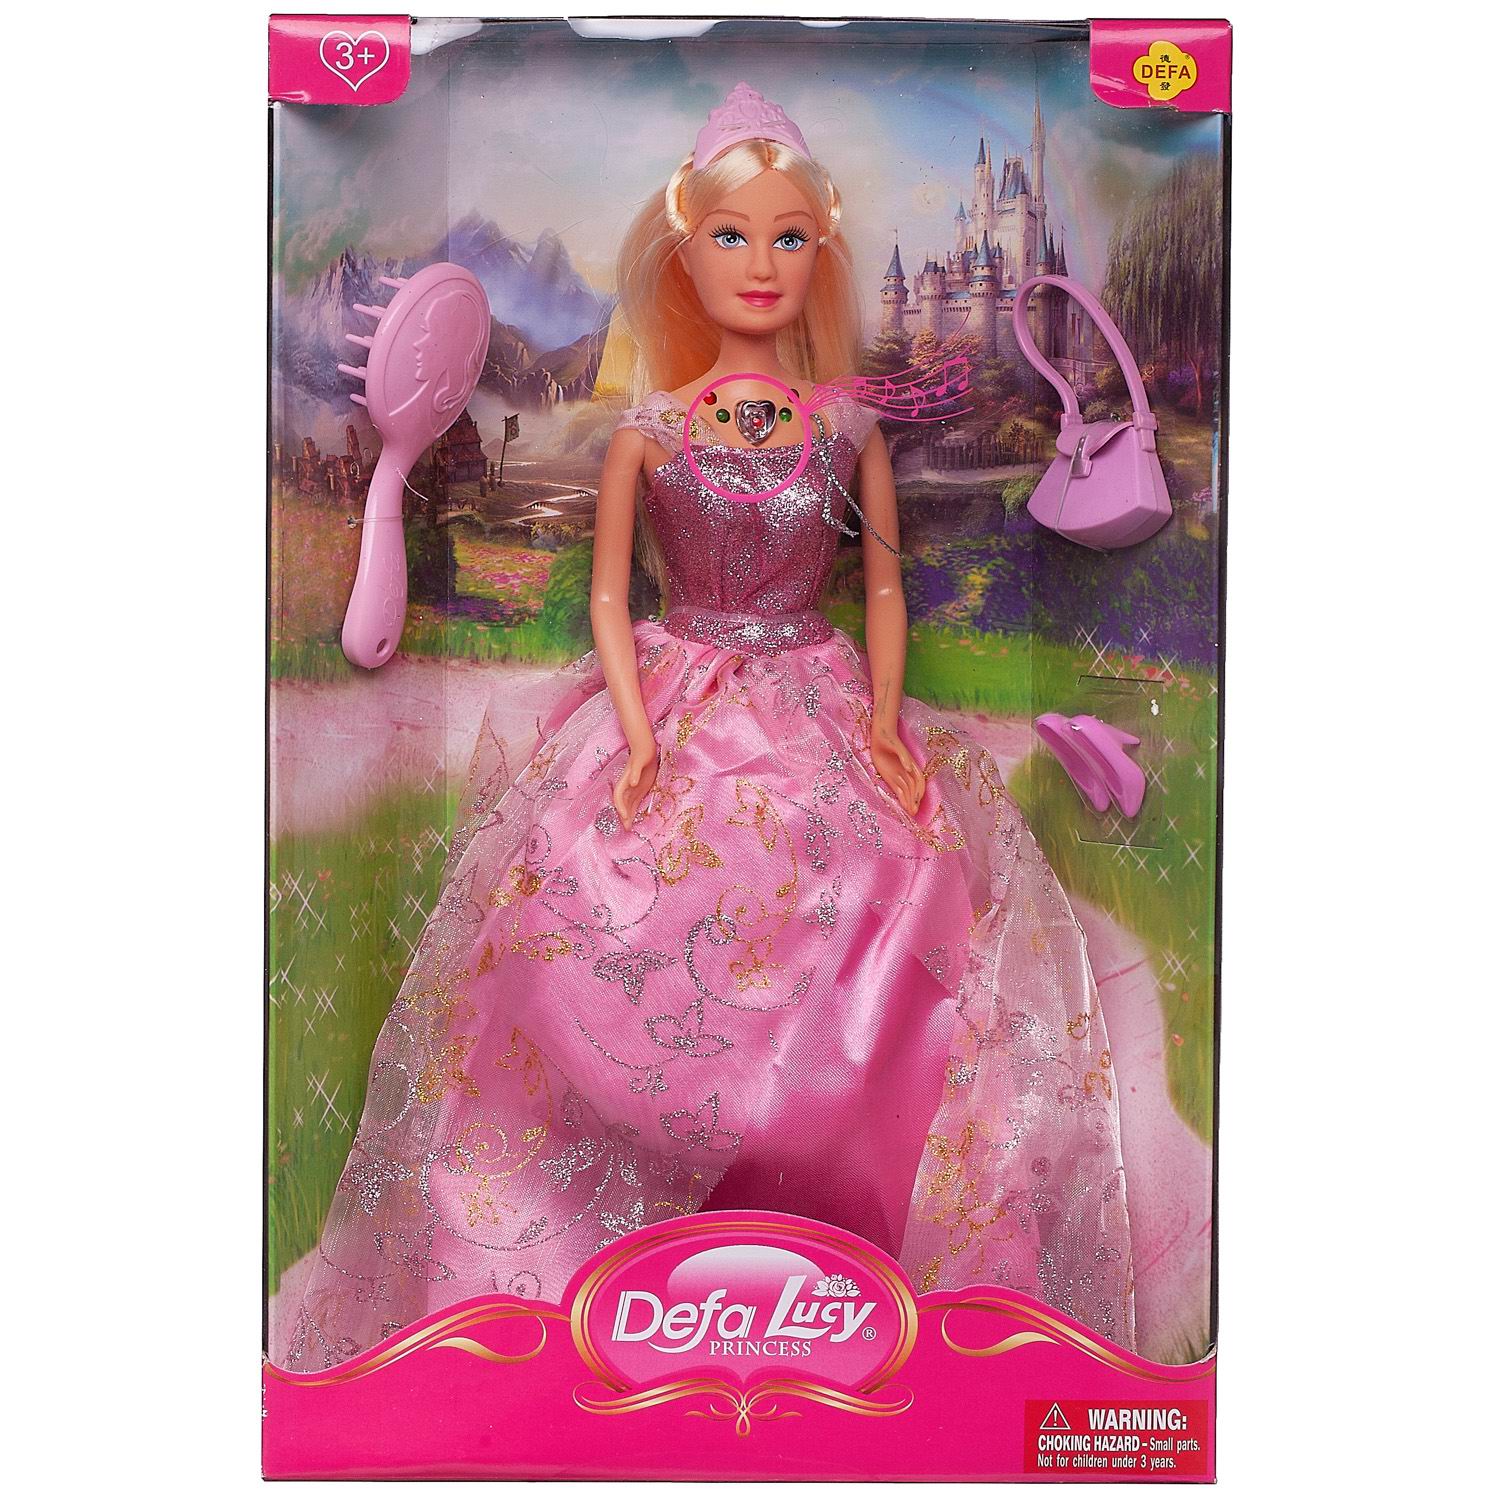 Кукла Defa Lucy Принцесса в розовом платье в наборе с игровыми предметами, 29 см кукла junfa зимняя принцесса в розовом платье 22 см wj 34770